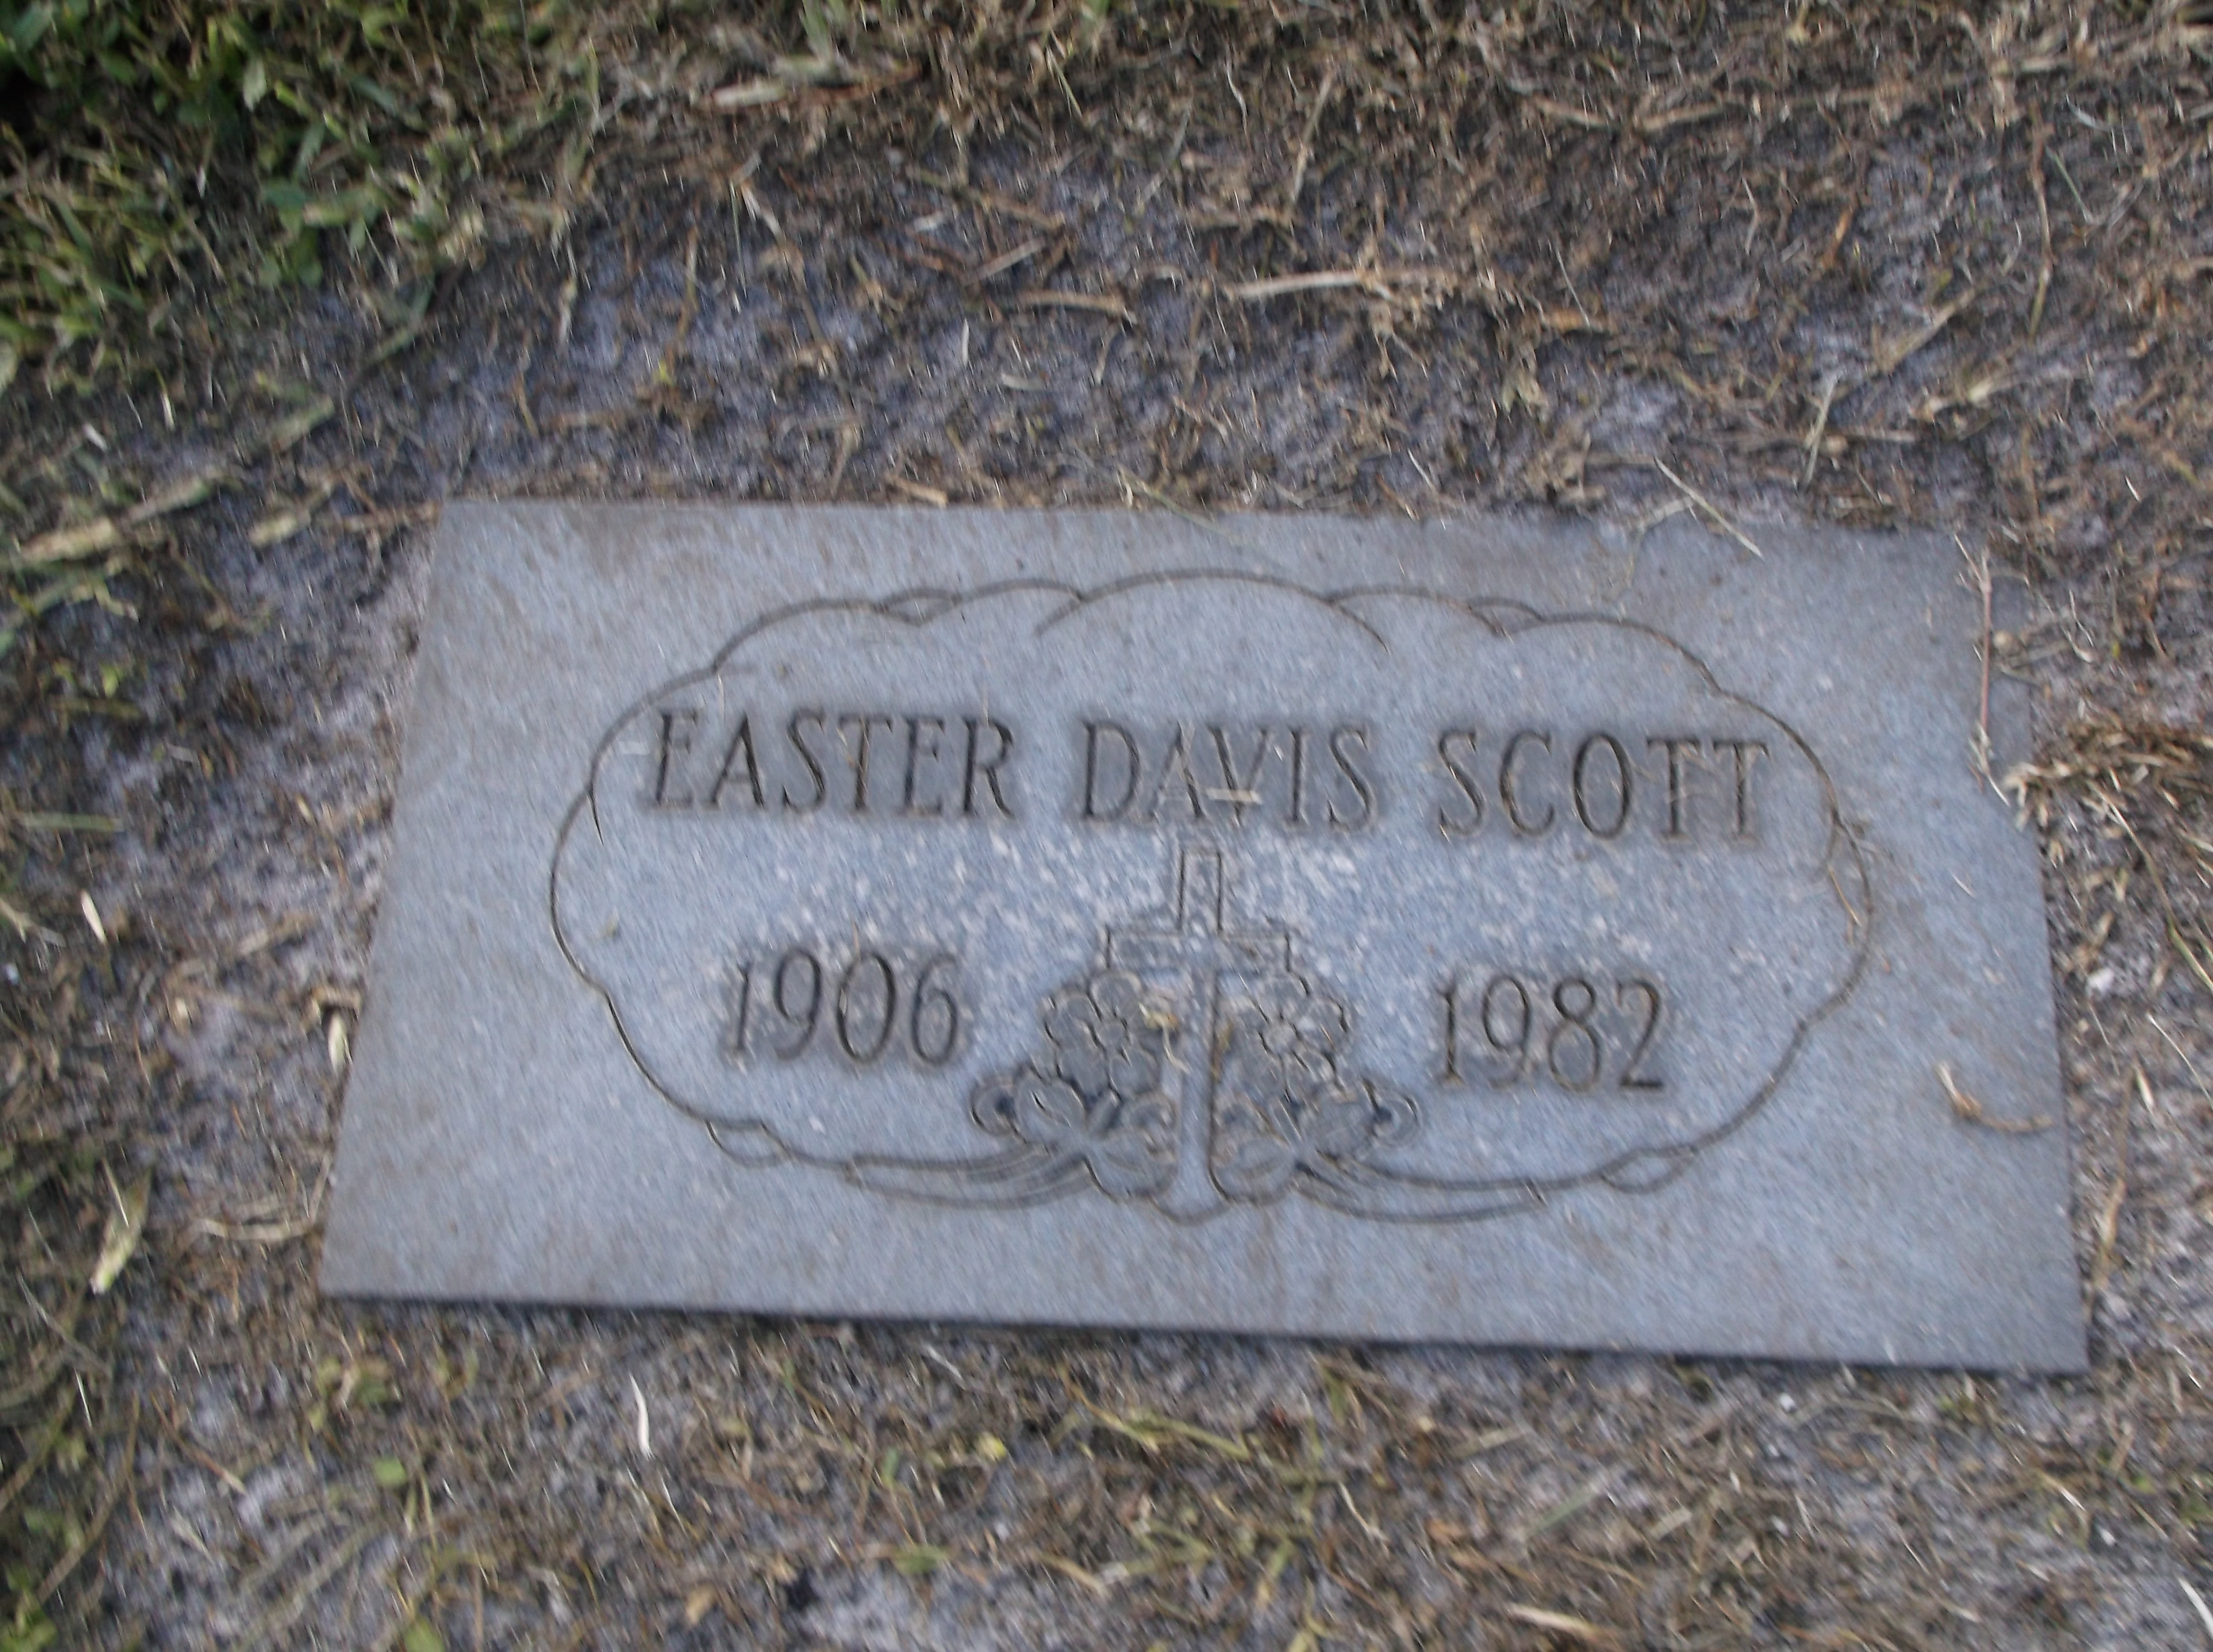 Easter Davis Scott